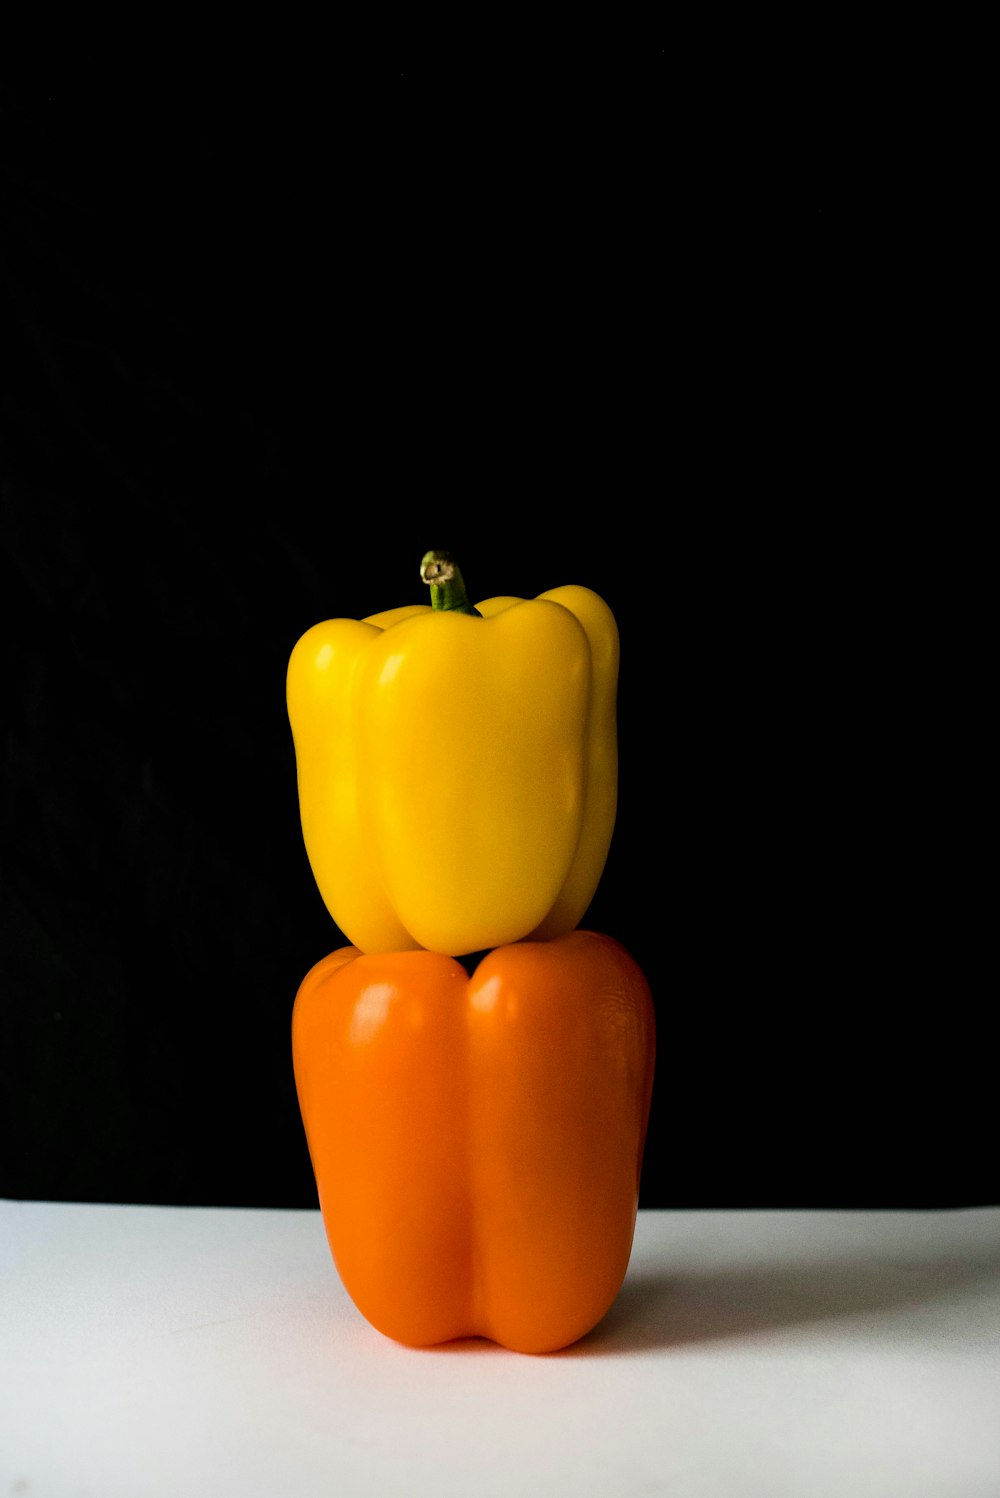 zwei gelbe und orangefarbene Paprika auf weißem Untergrund